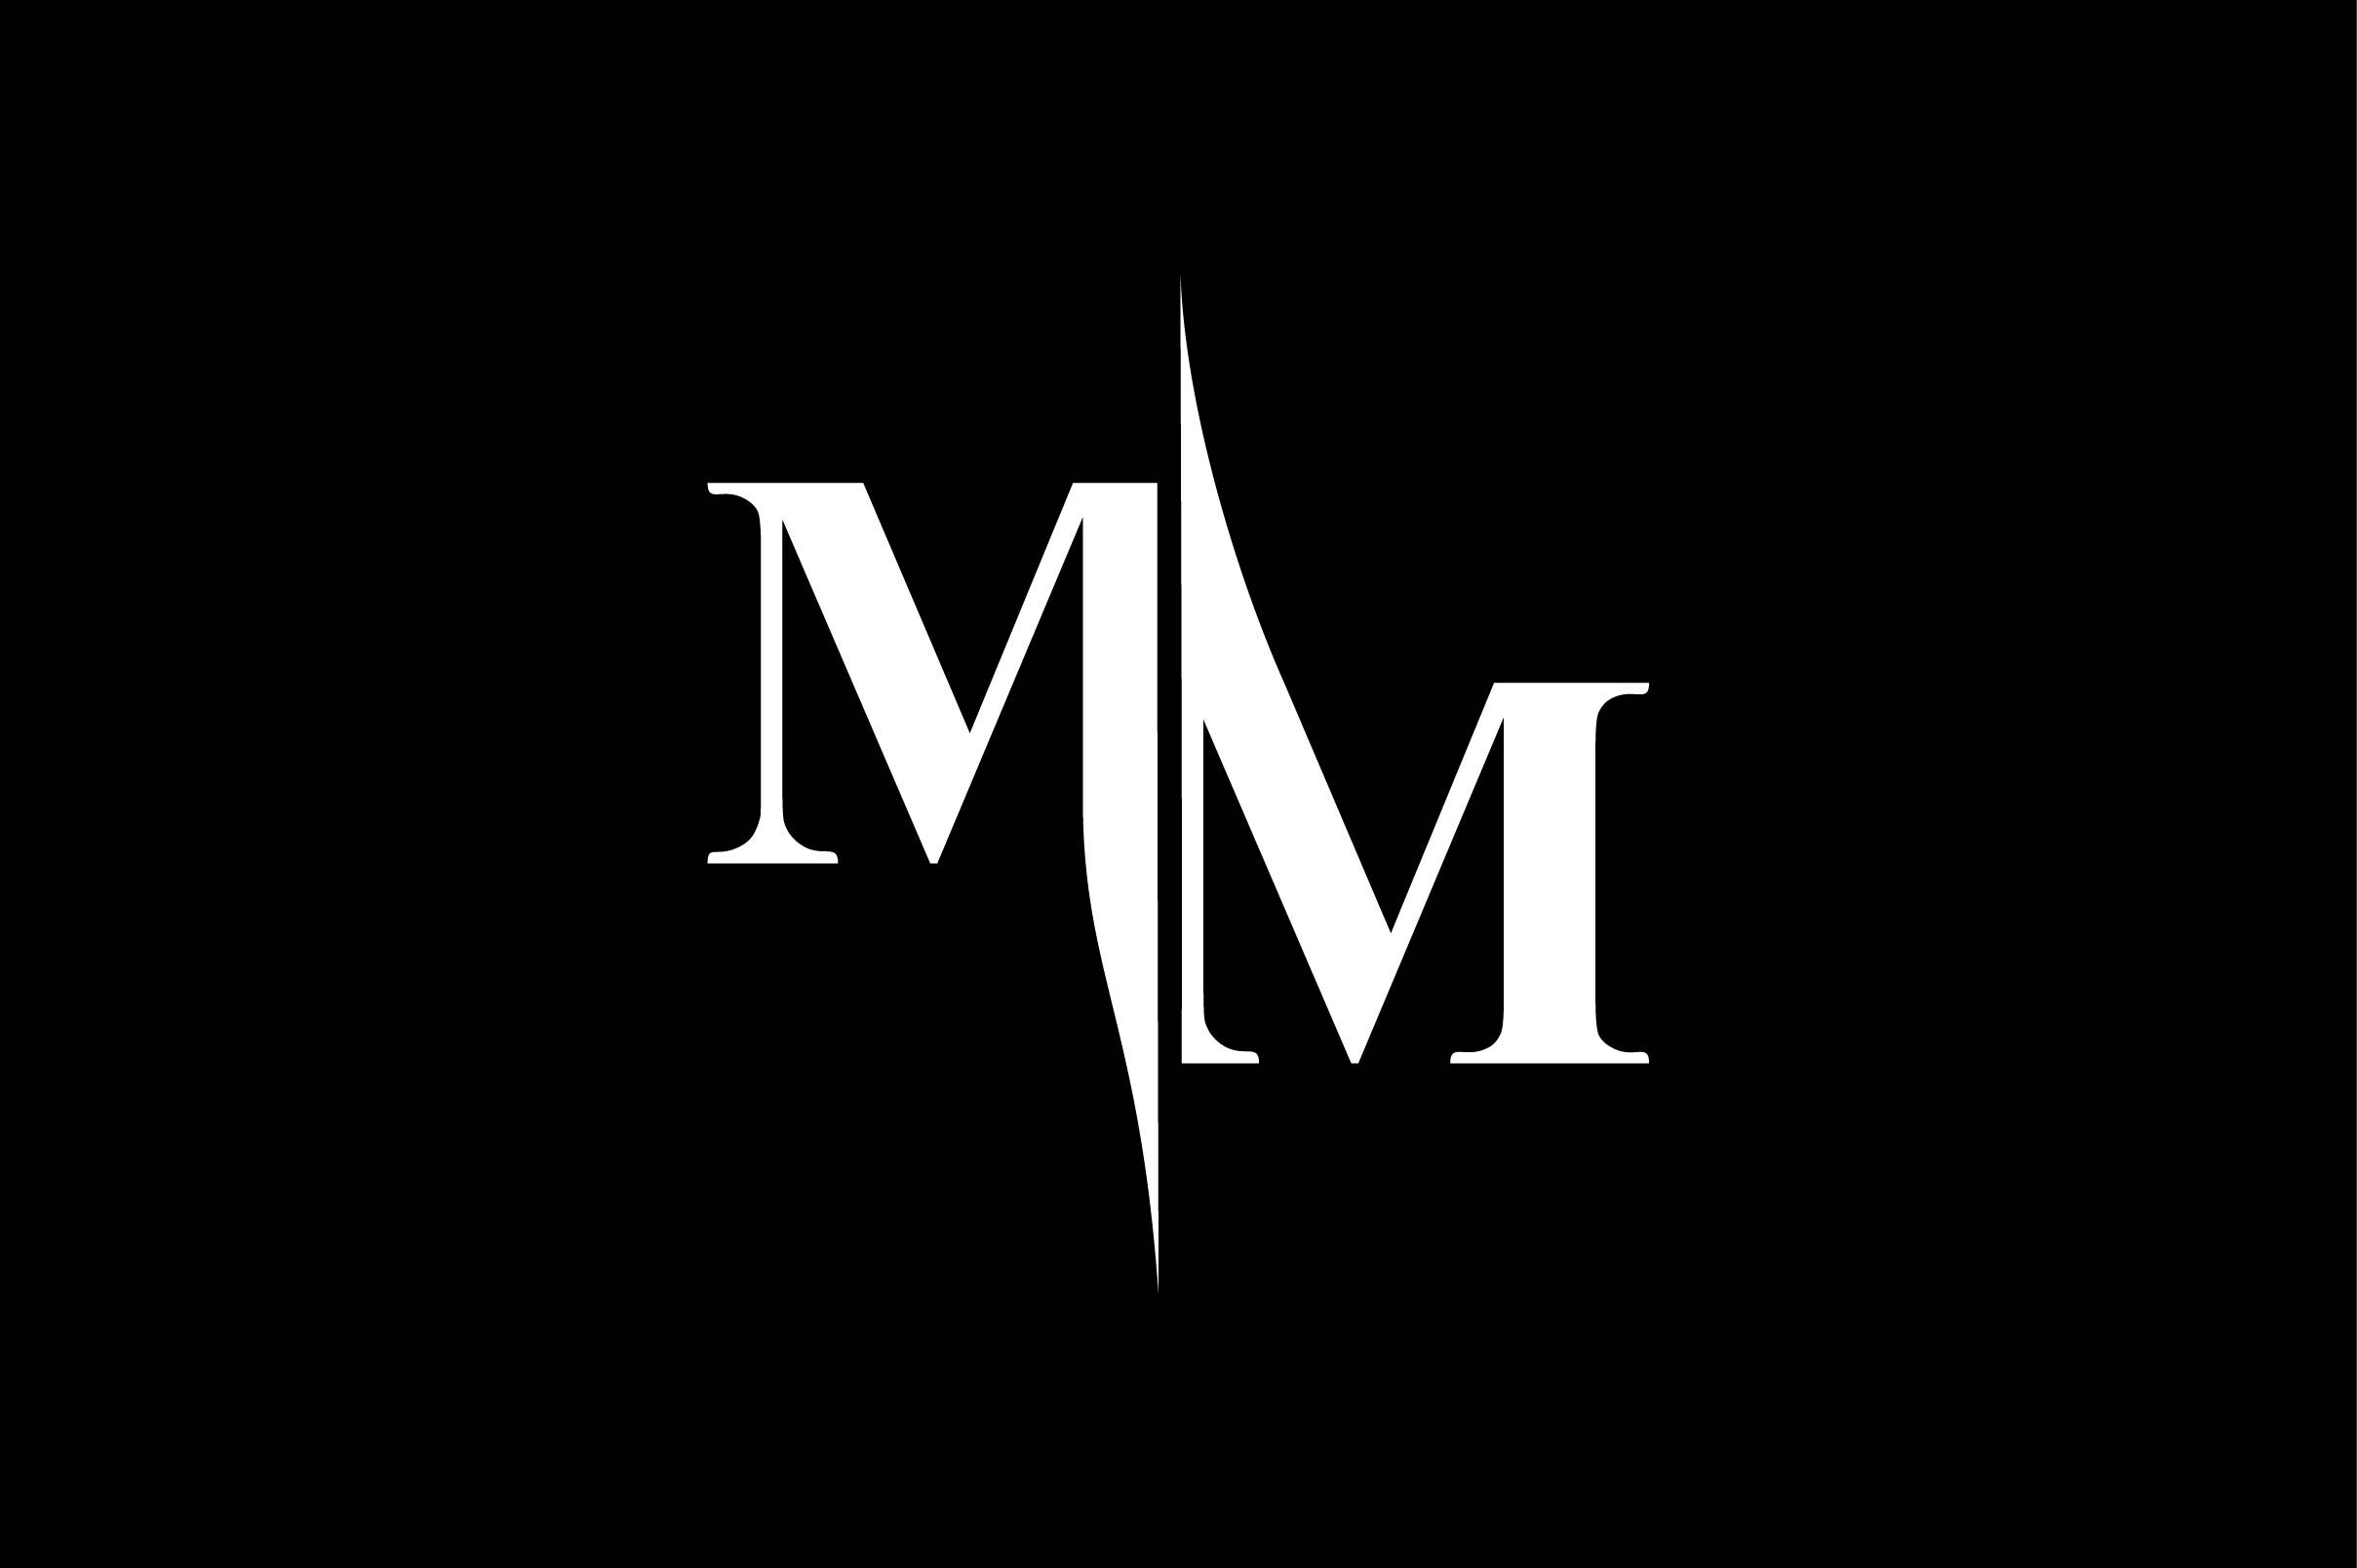 Monogram MM - vector clipart